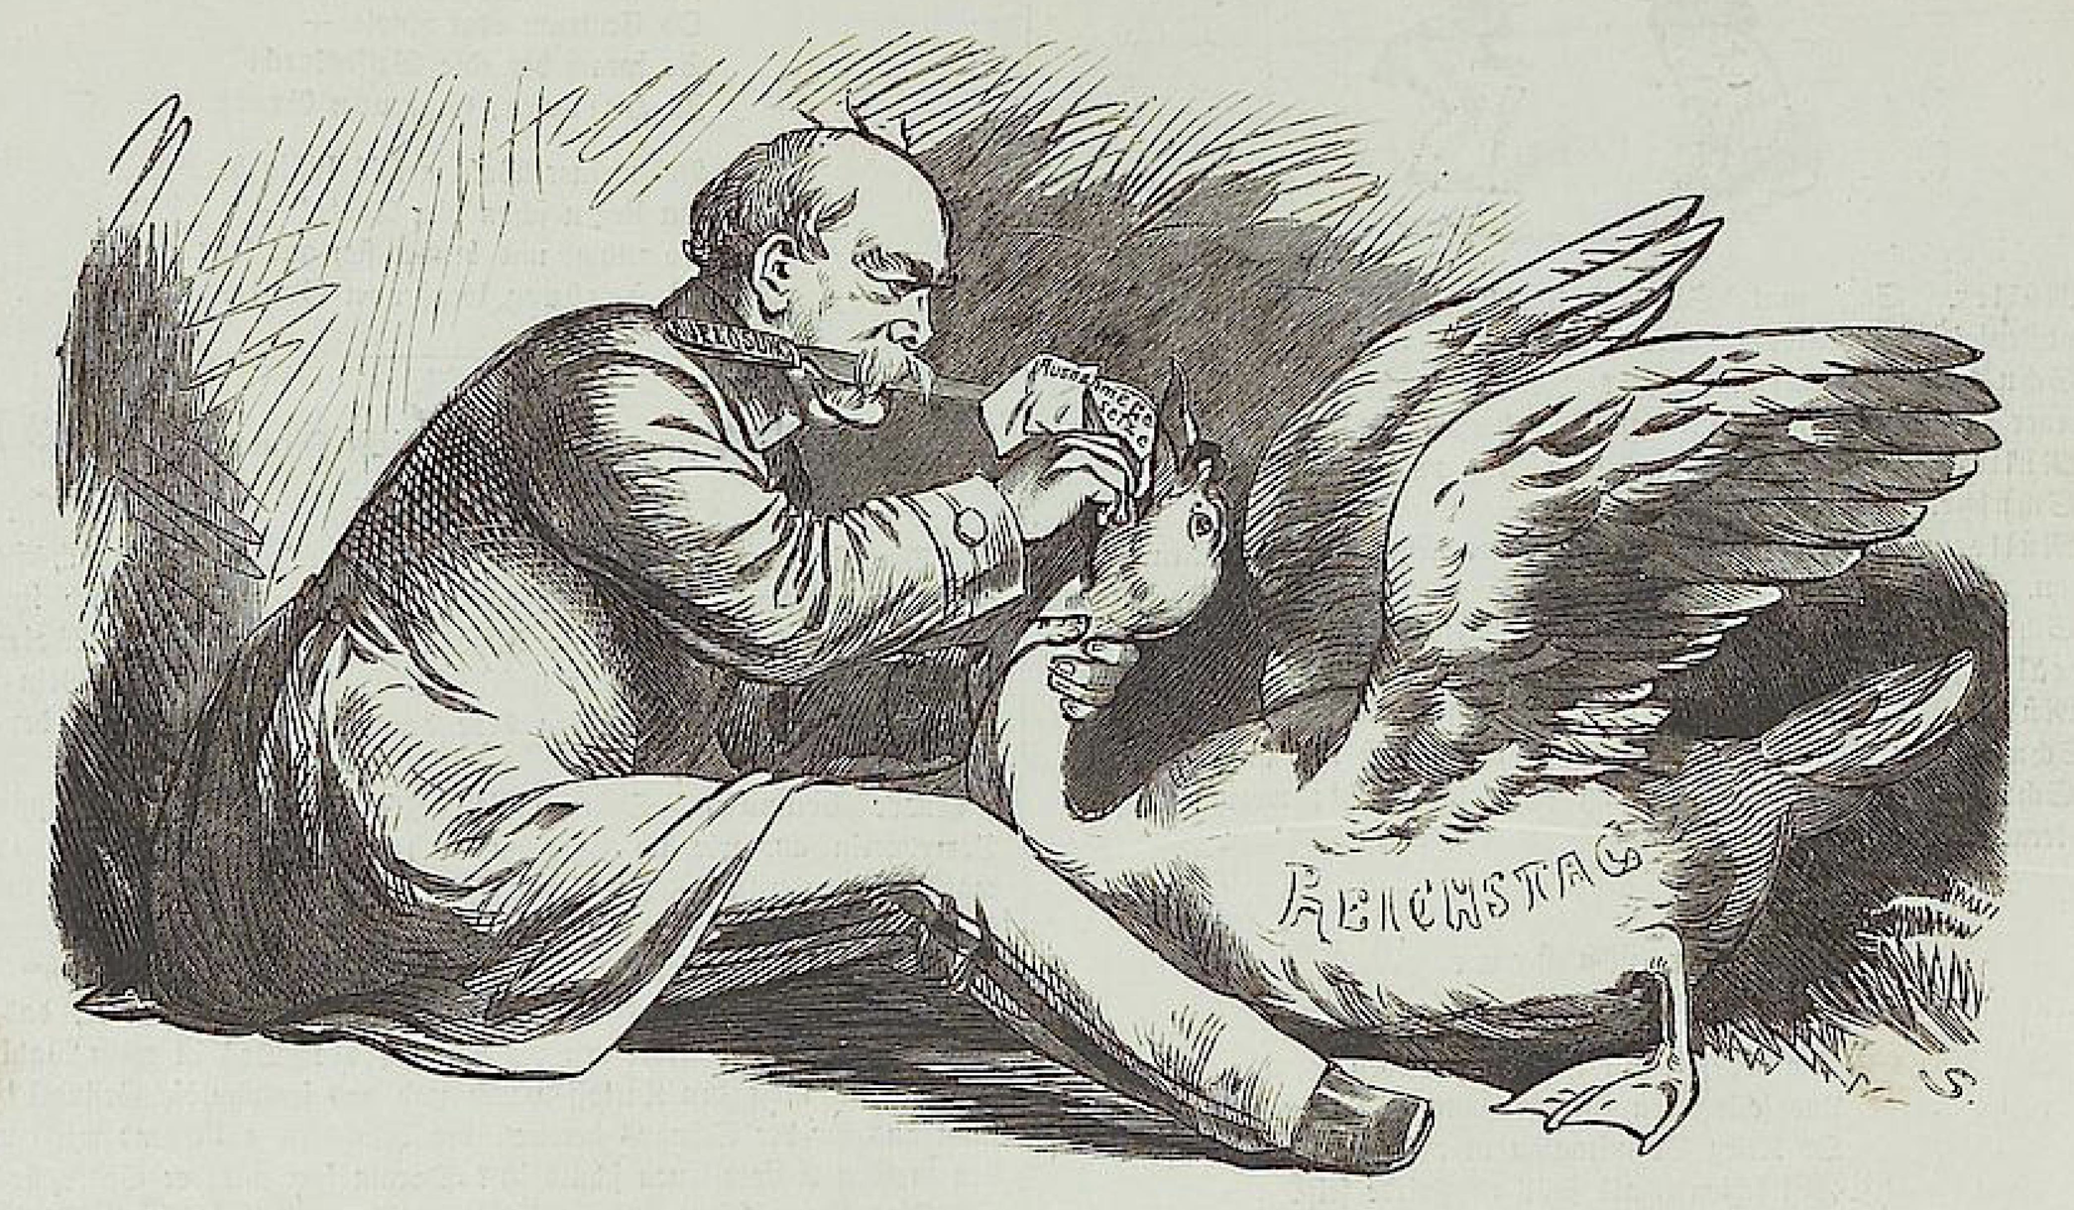 Caricature Bismarck, un couteau entre les dents, sur lequel est gravé "dissolution", gave une oie avec une feuille intitulée "lois d'exception". Cette oie porte sur le flanc la mention "Reichstag"